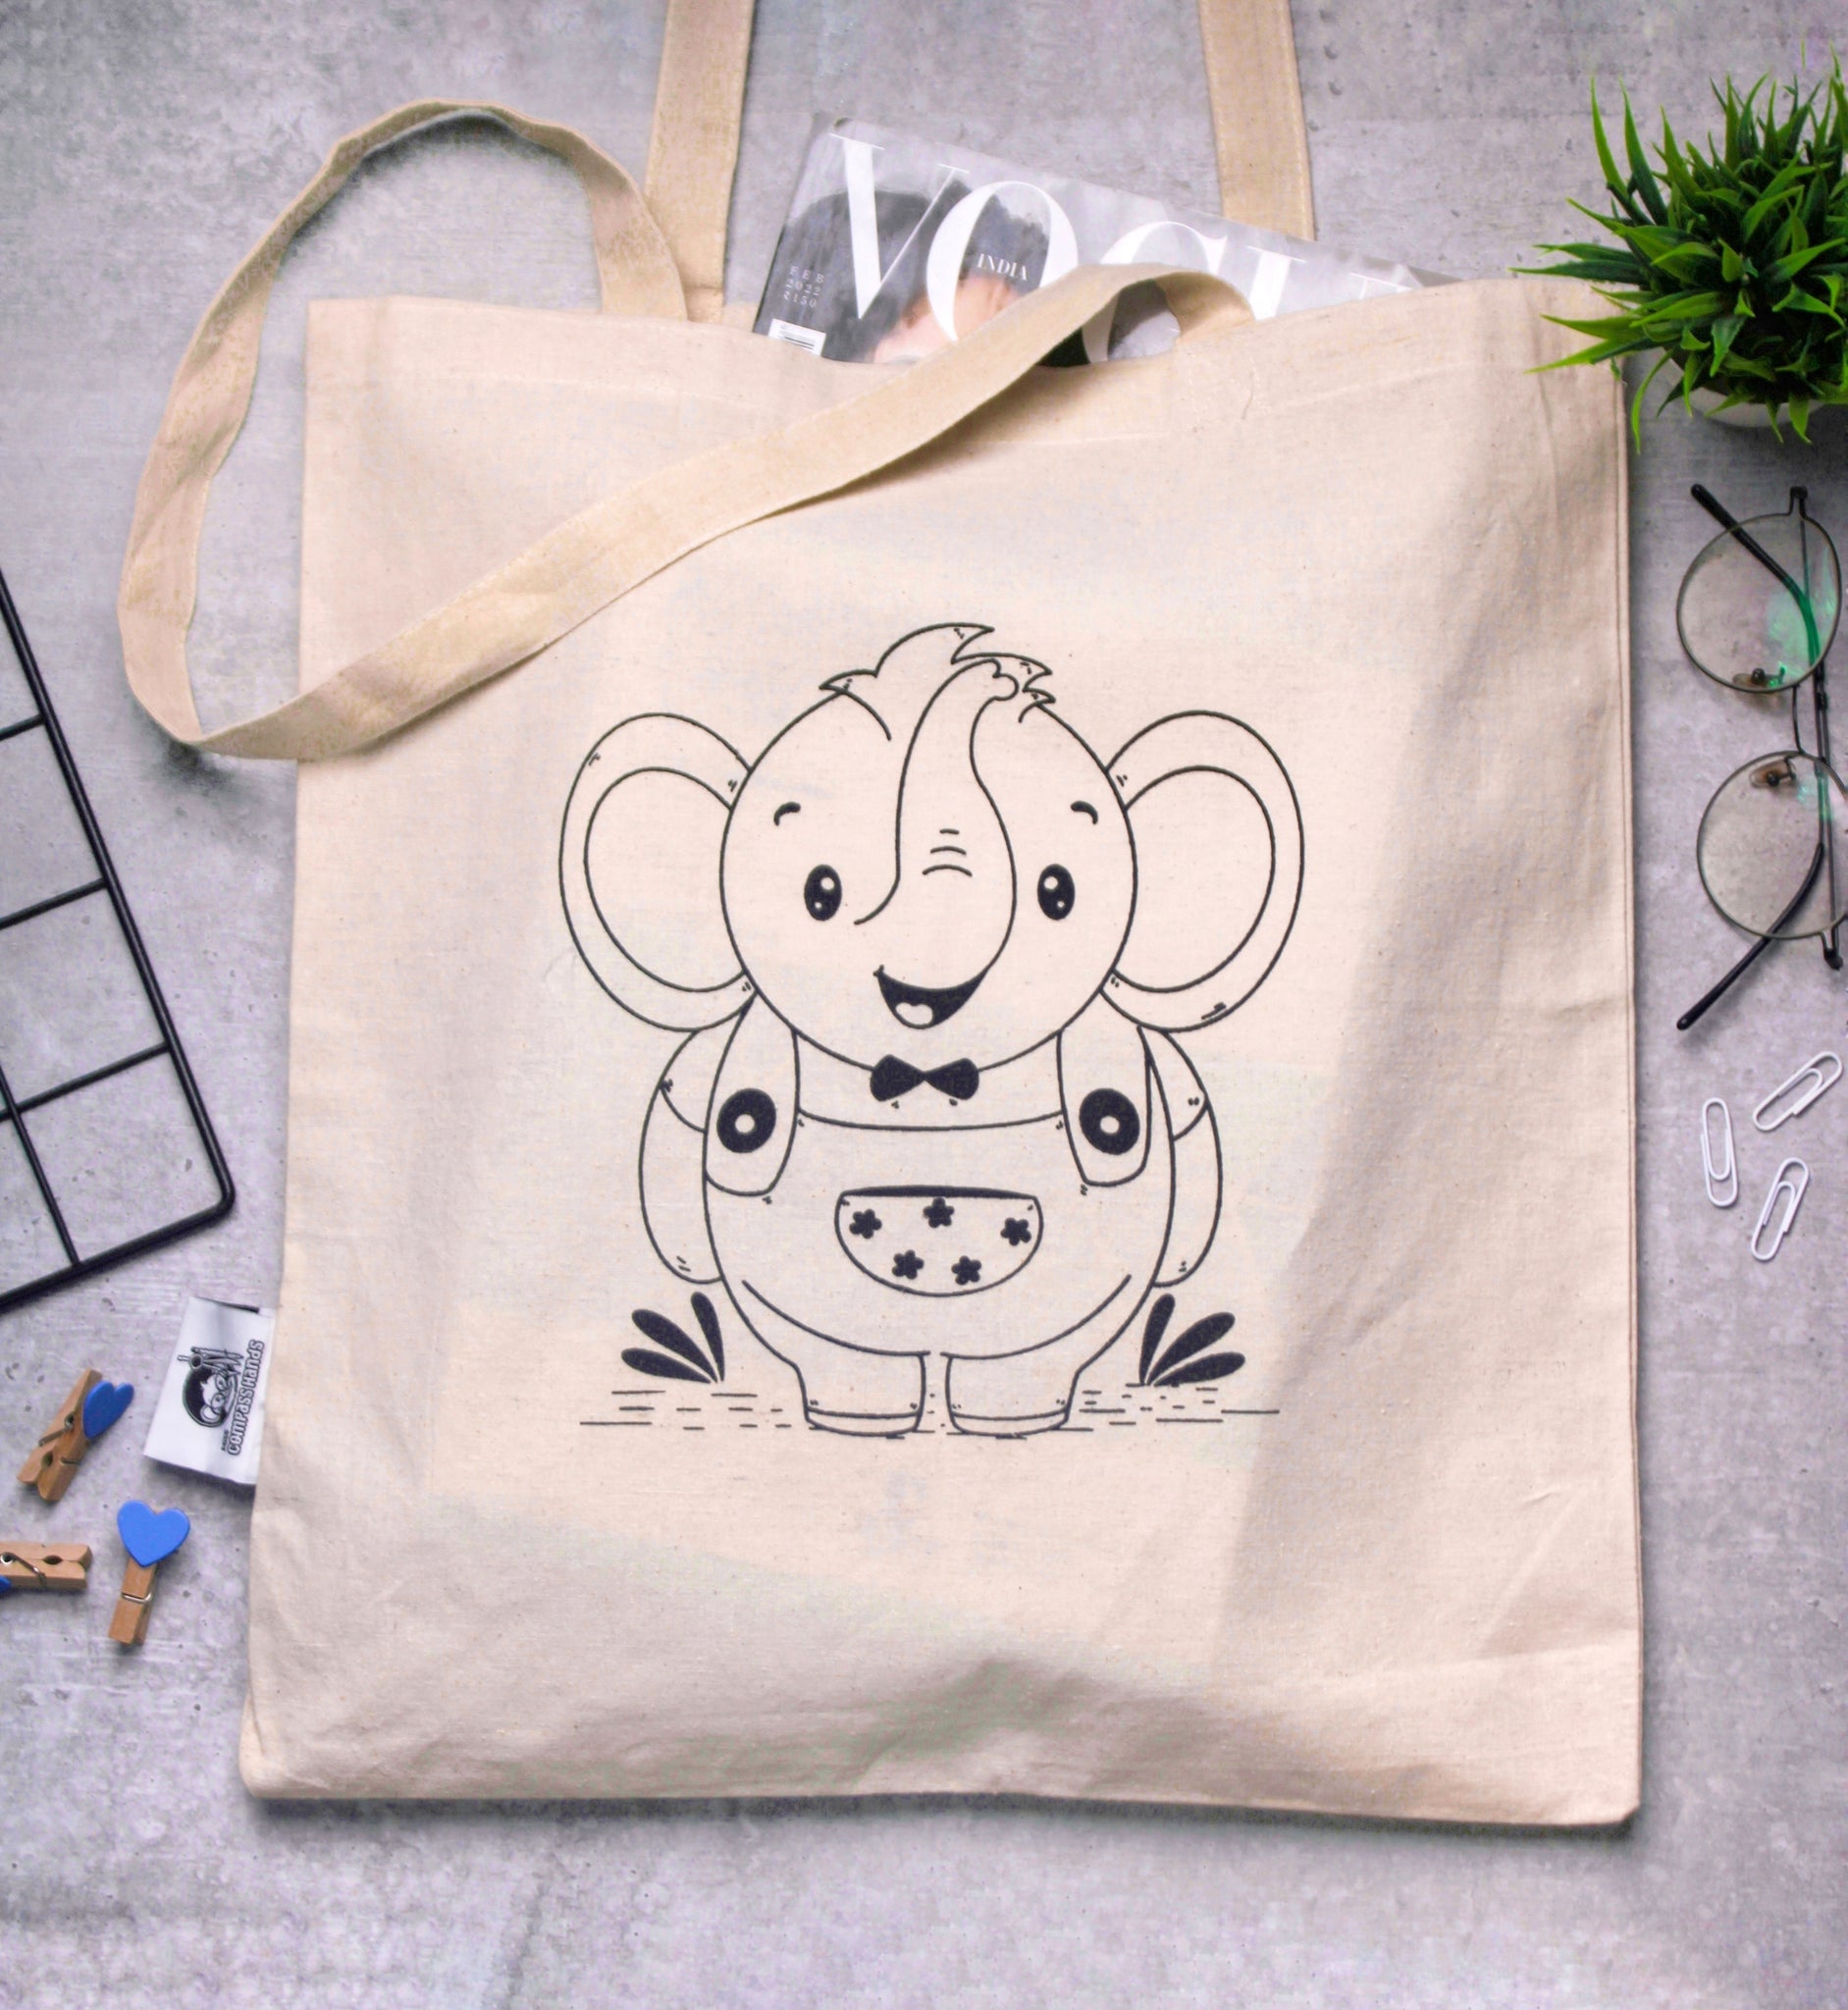 Diaper Bags Buy Baby Diaper Bags  Maternity Backpacks Online   PolkaTotsin